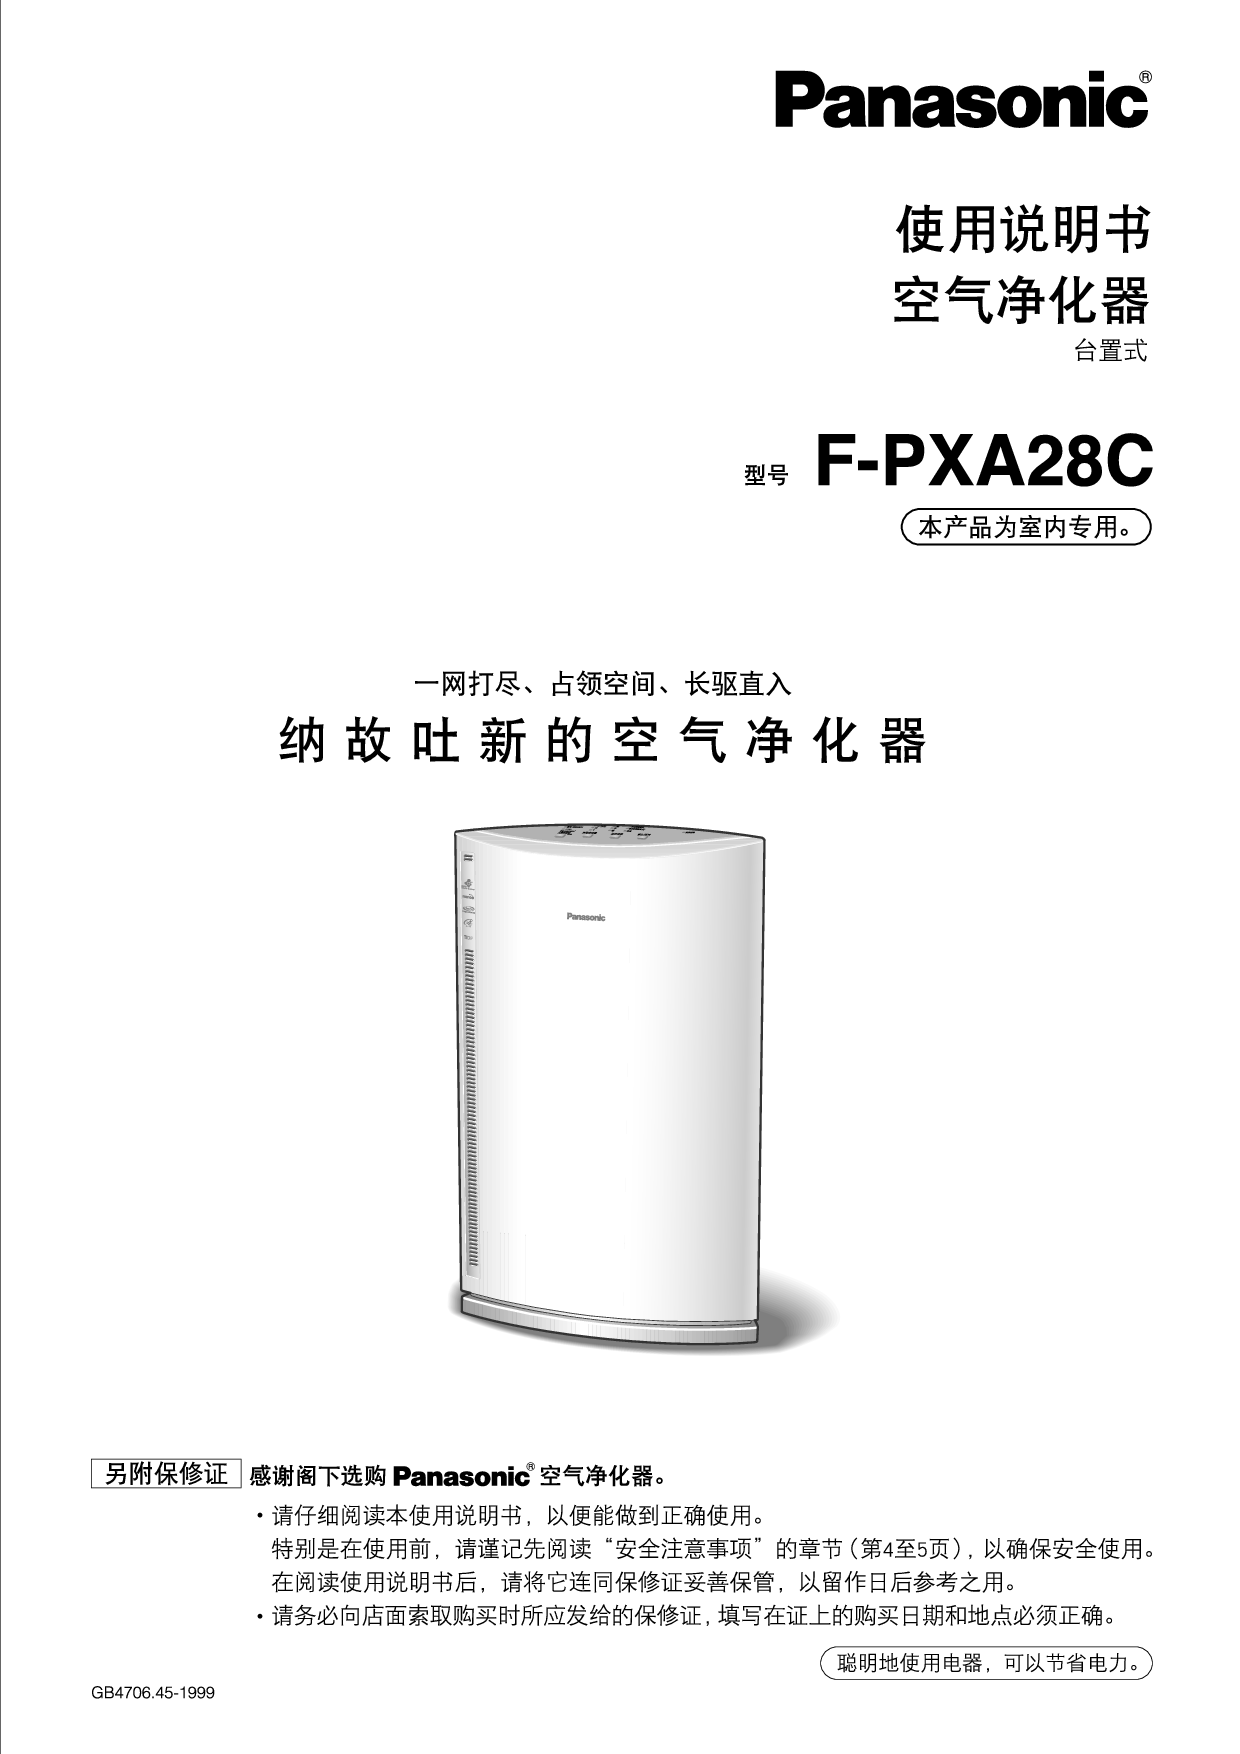 松下 Panasonic F-PXA28C 说明书 封面